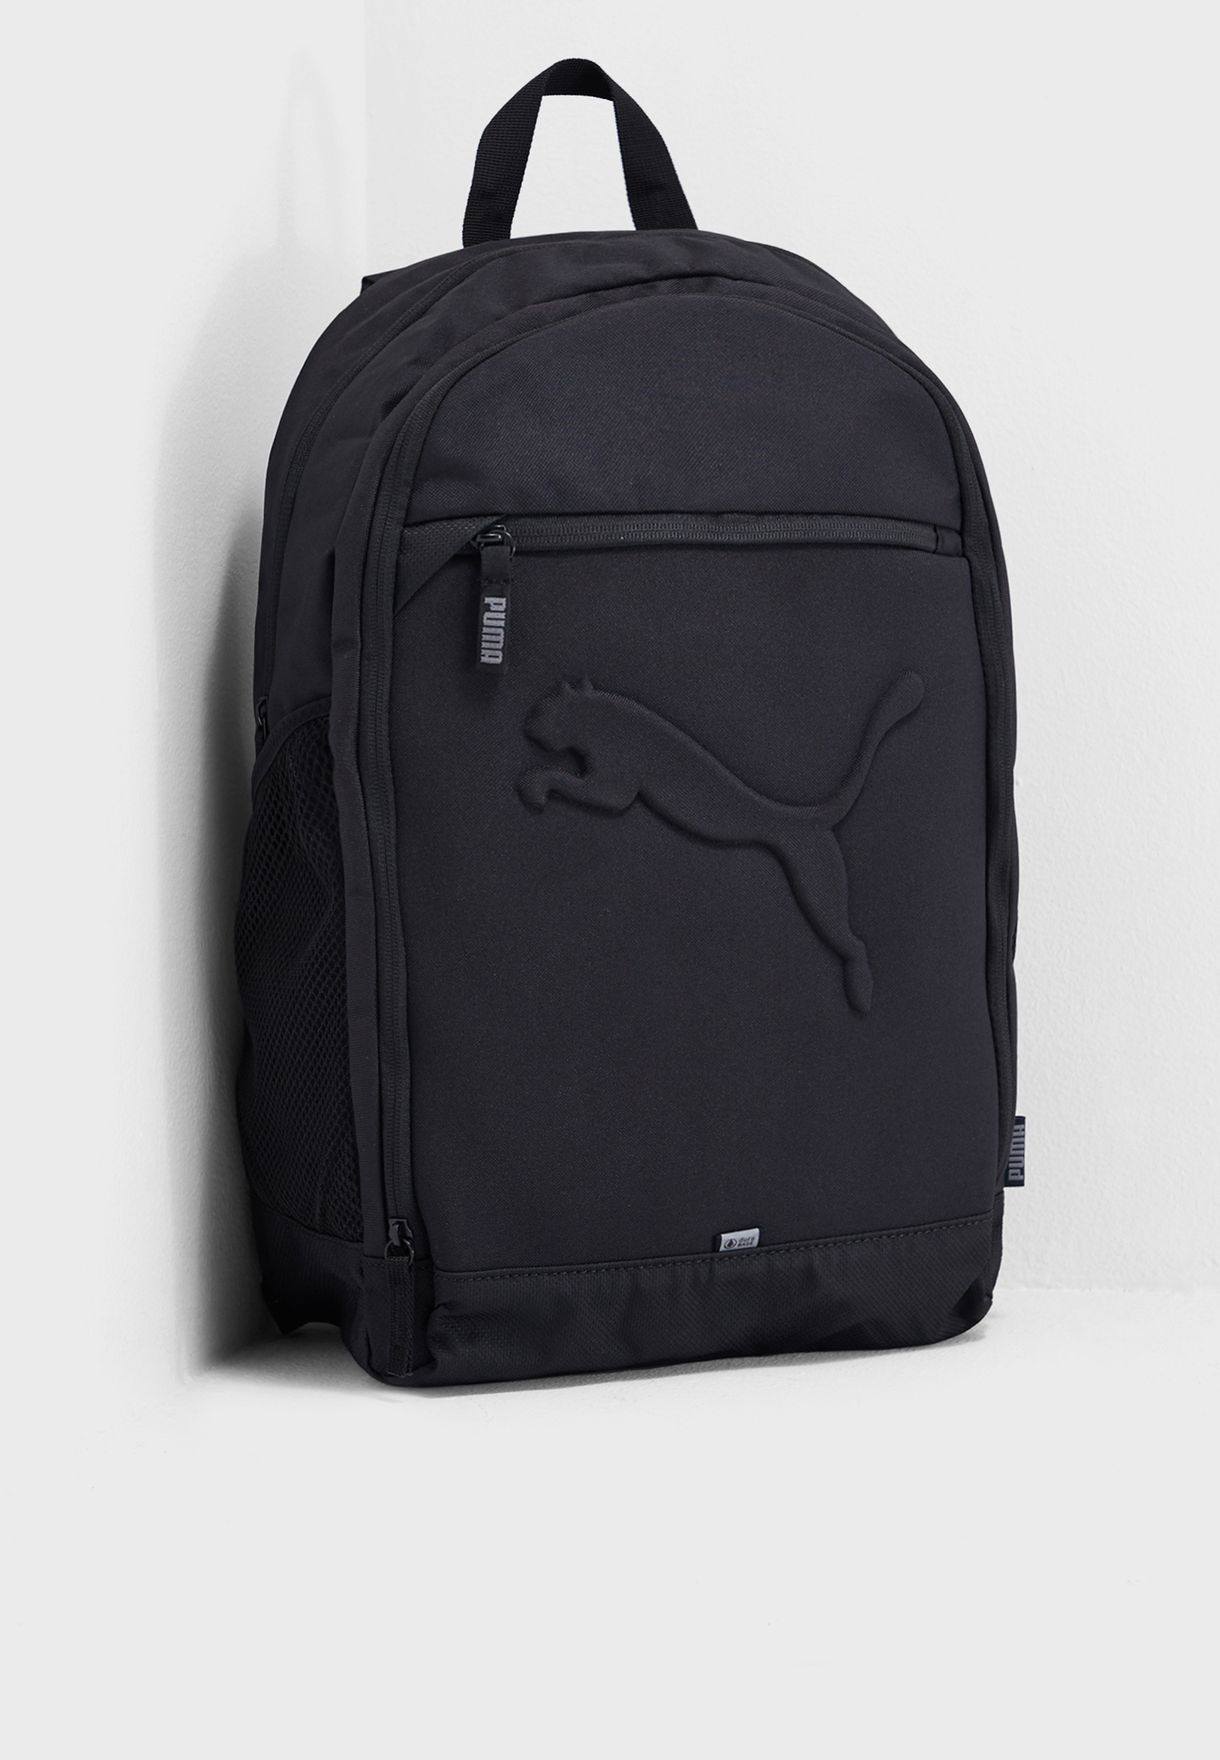 puma embossed backpack